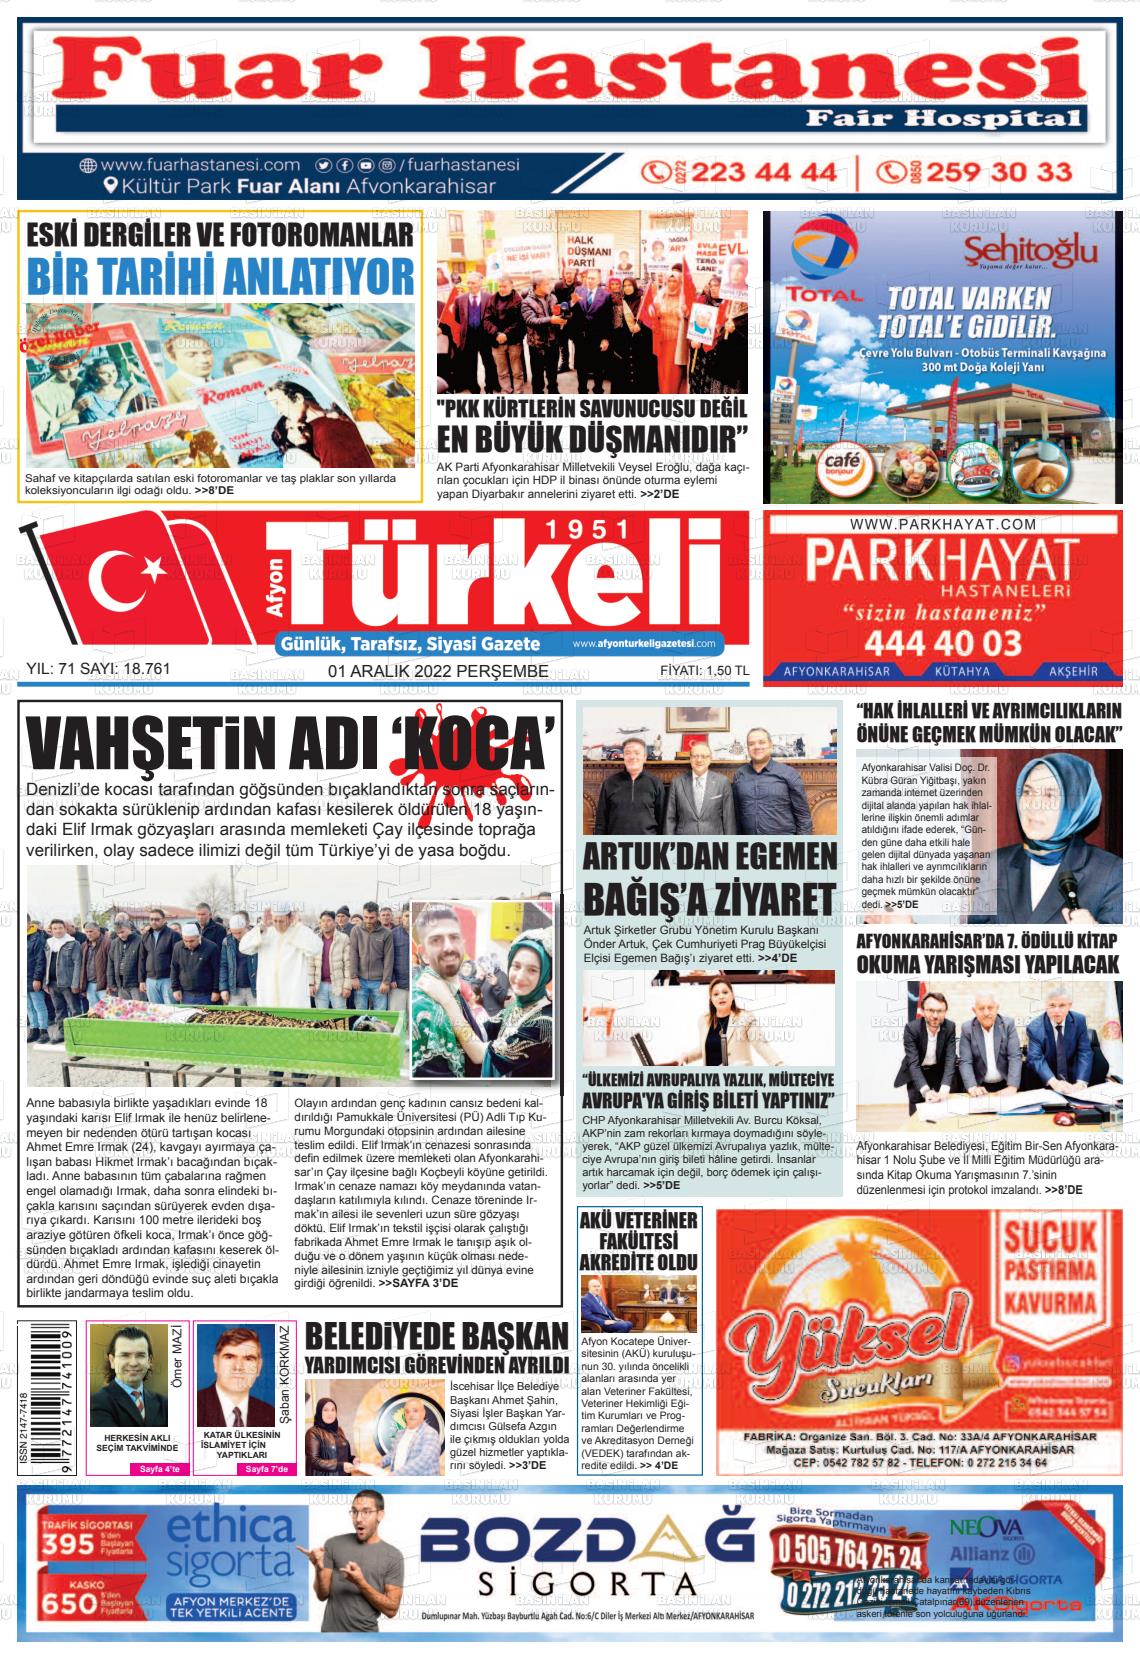 01 Aralık 2022 Afyon Türkeli Gazete Manşeti